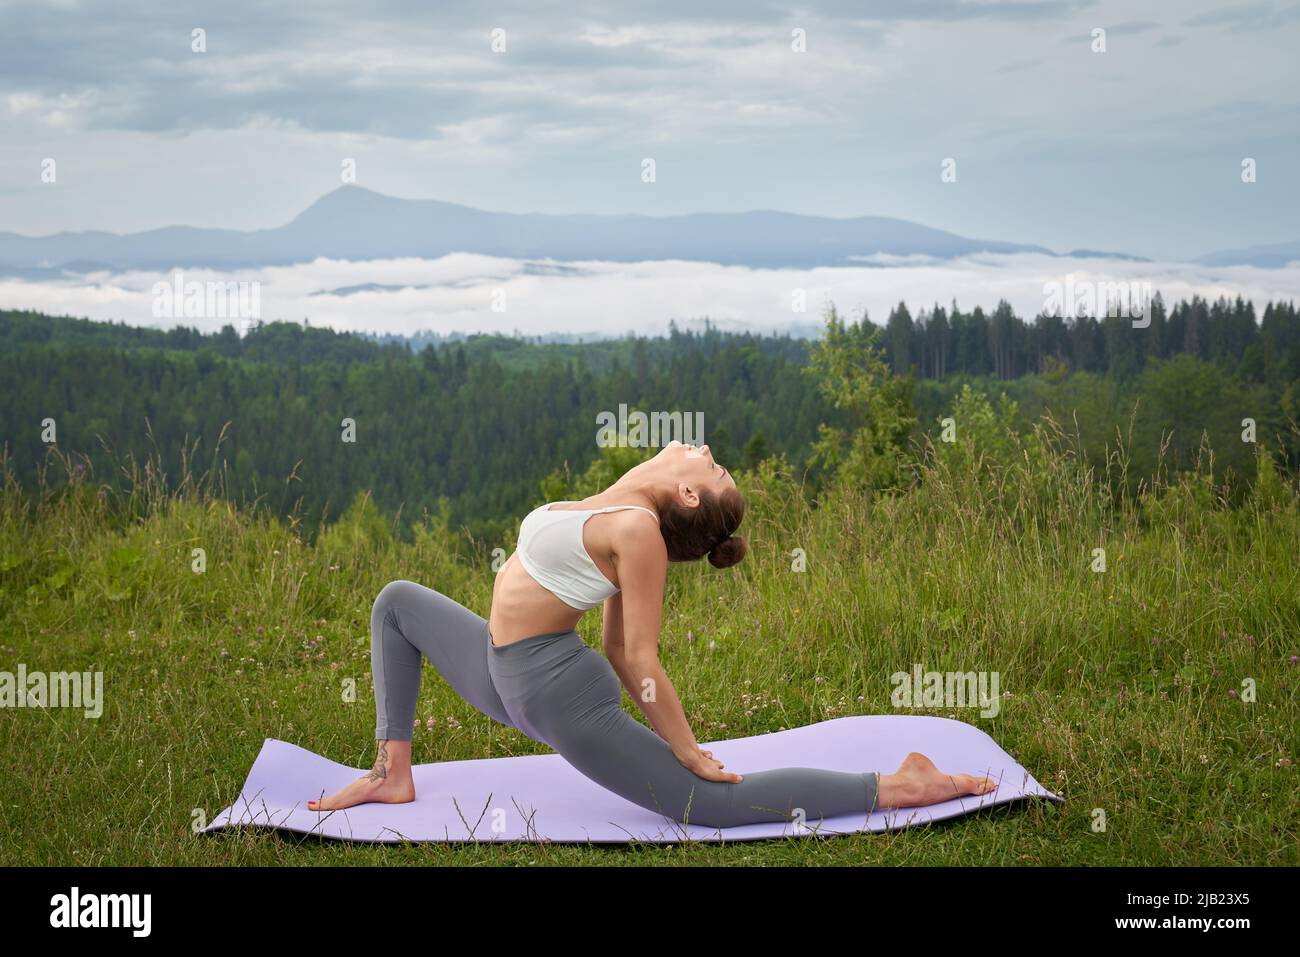 Eine athletische Frau in Sportkleidung, die während des aktiven Trainings an der frischen Luft flexible Übungen auf einer Yogamatte macht. Konzept eines gesunden Lebensstils und Outdoor-Training. Stockfoto